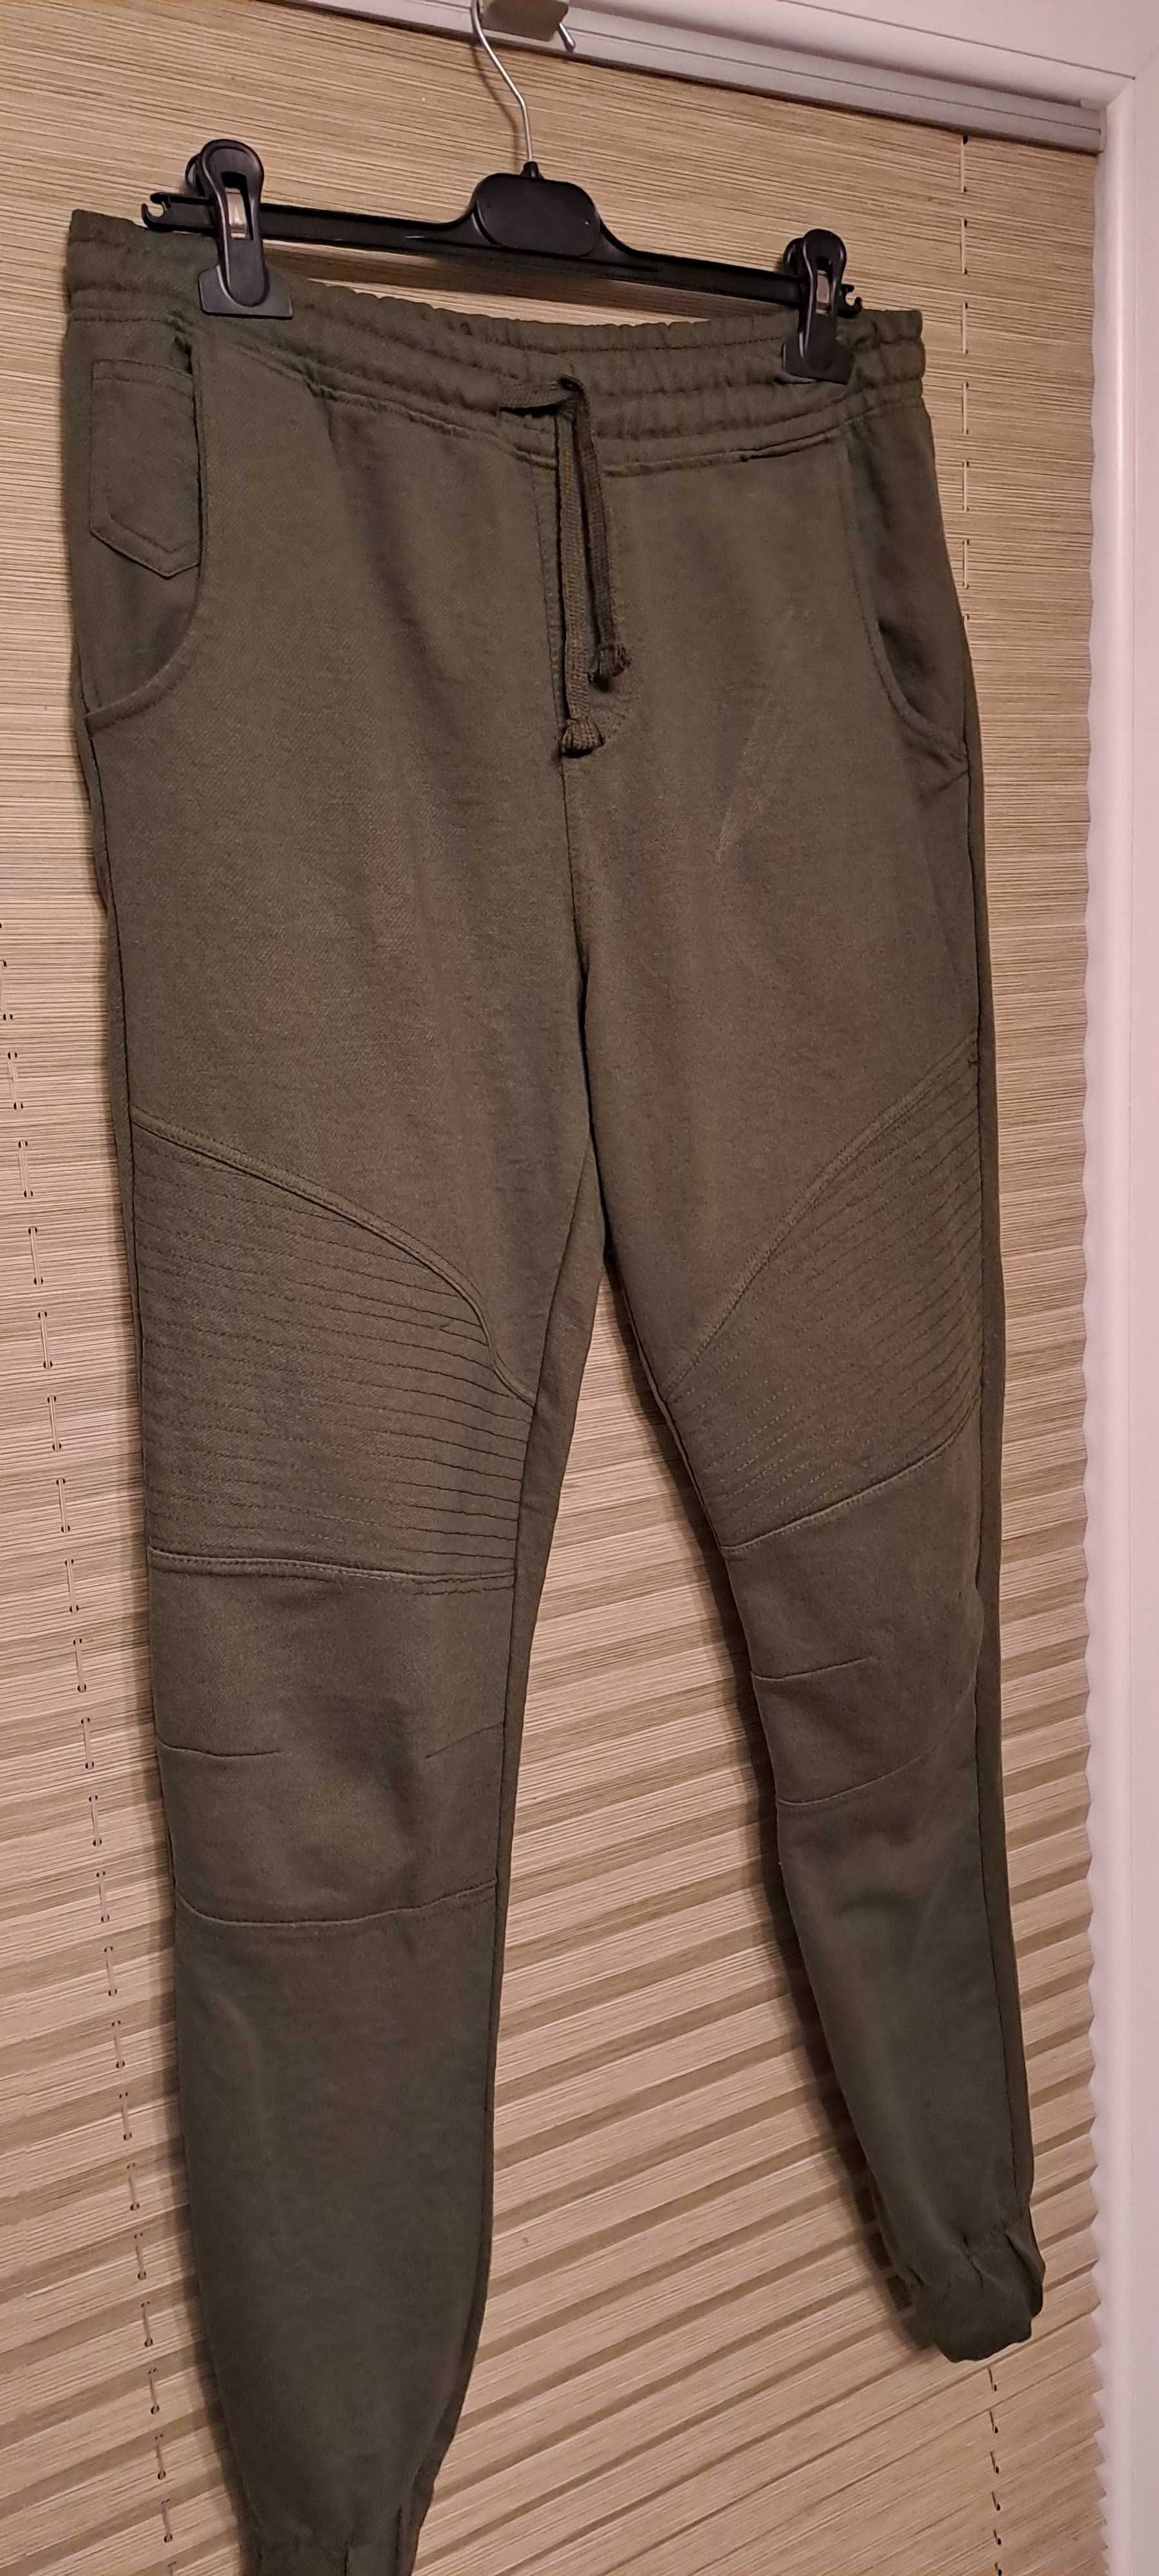 Spodnie dresowe marki Identic Man- rozmiar M